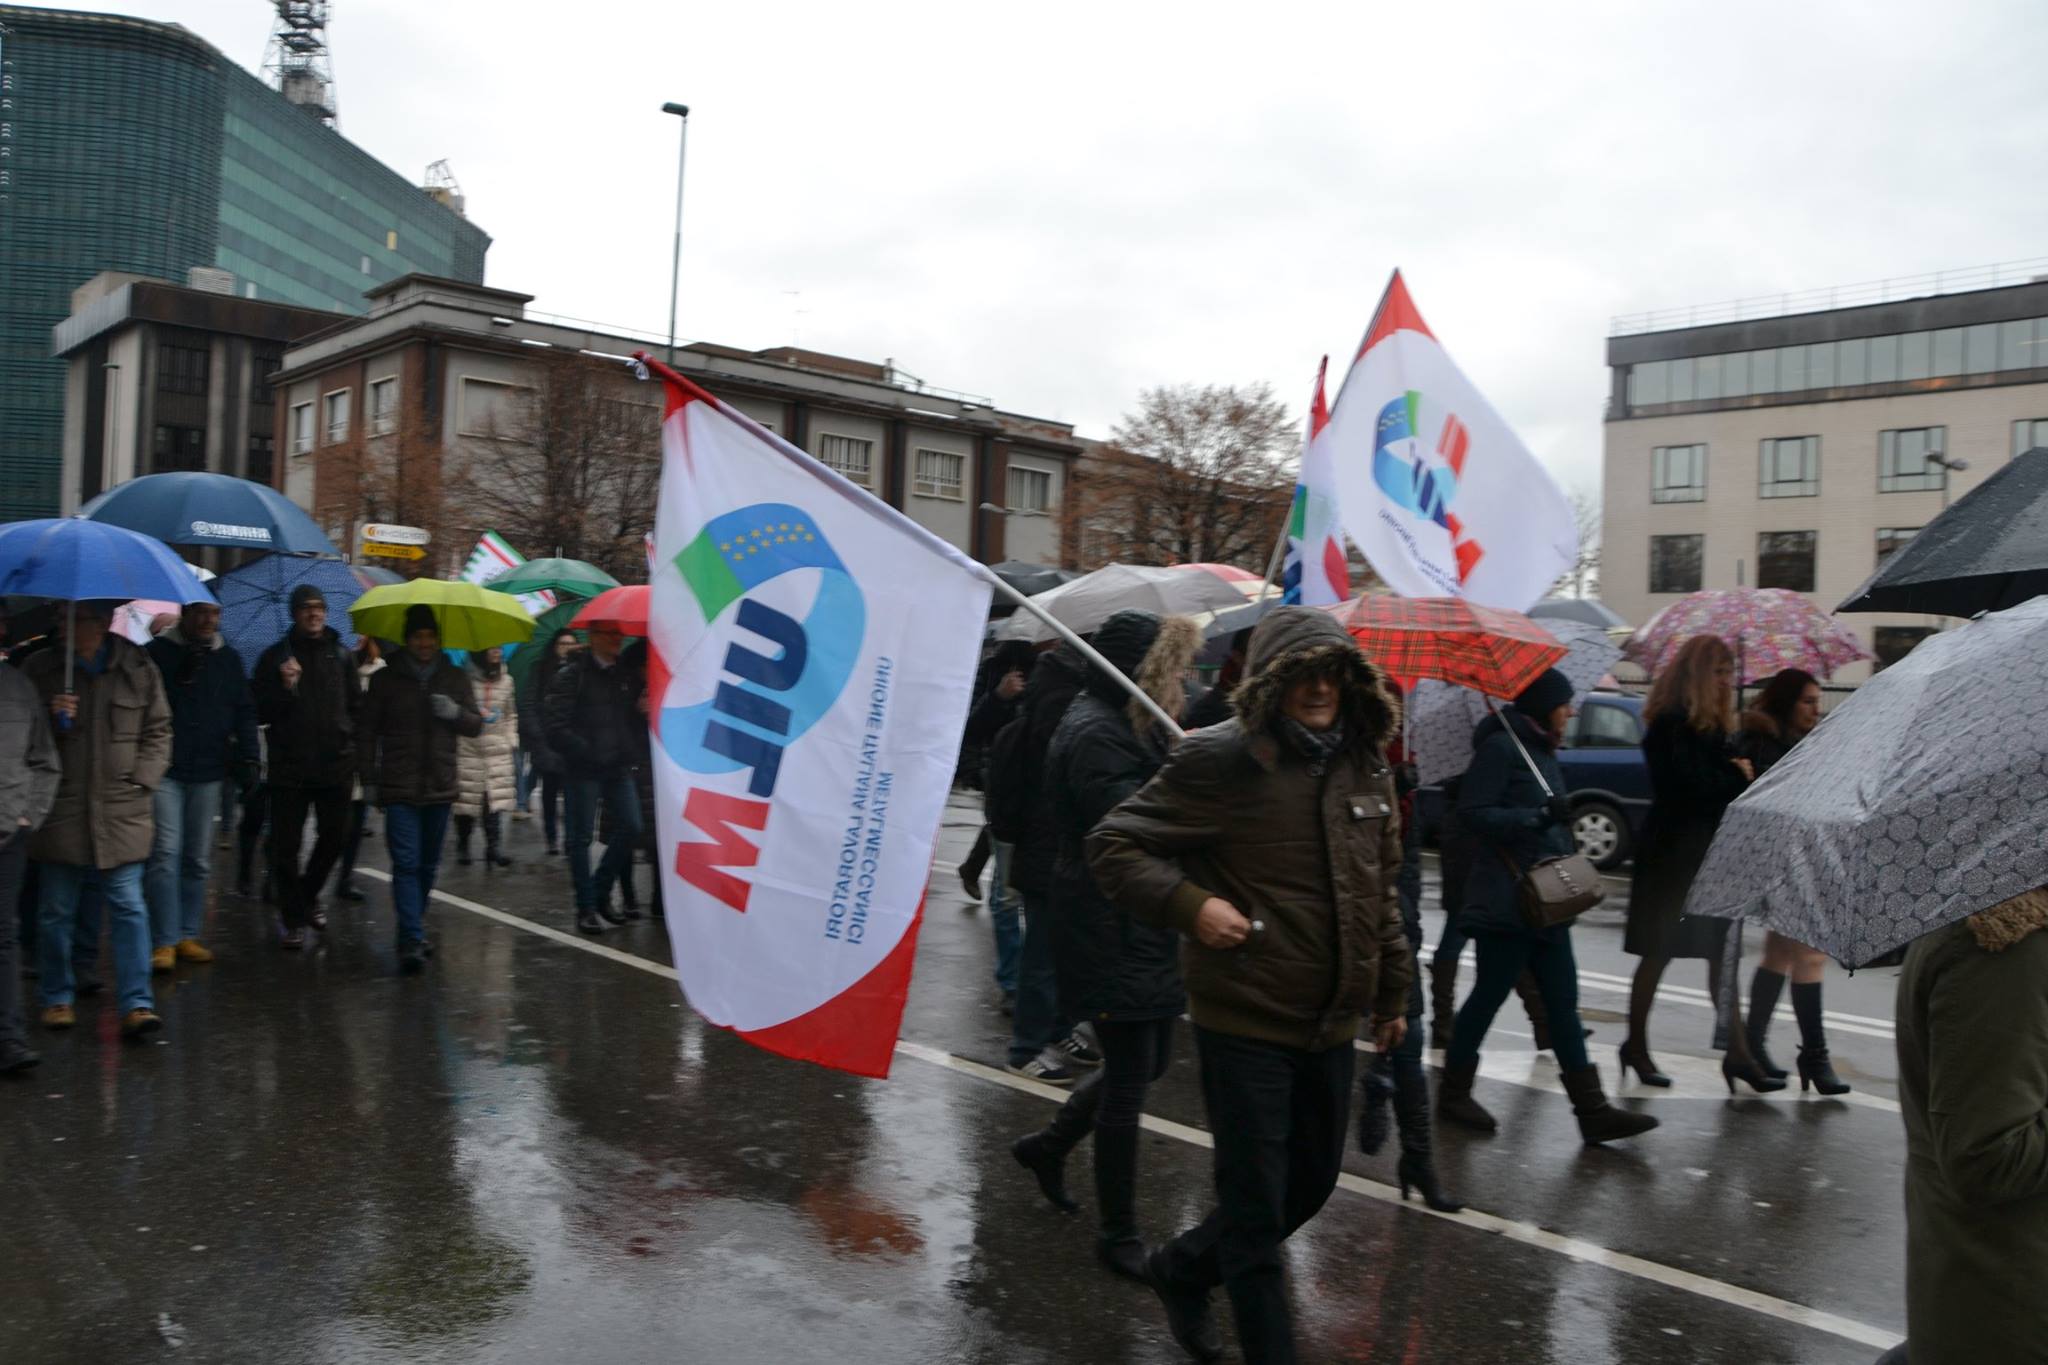 Abb, Alstom, Ge: manifestazione e incontri coi sindacati